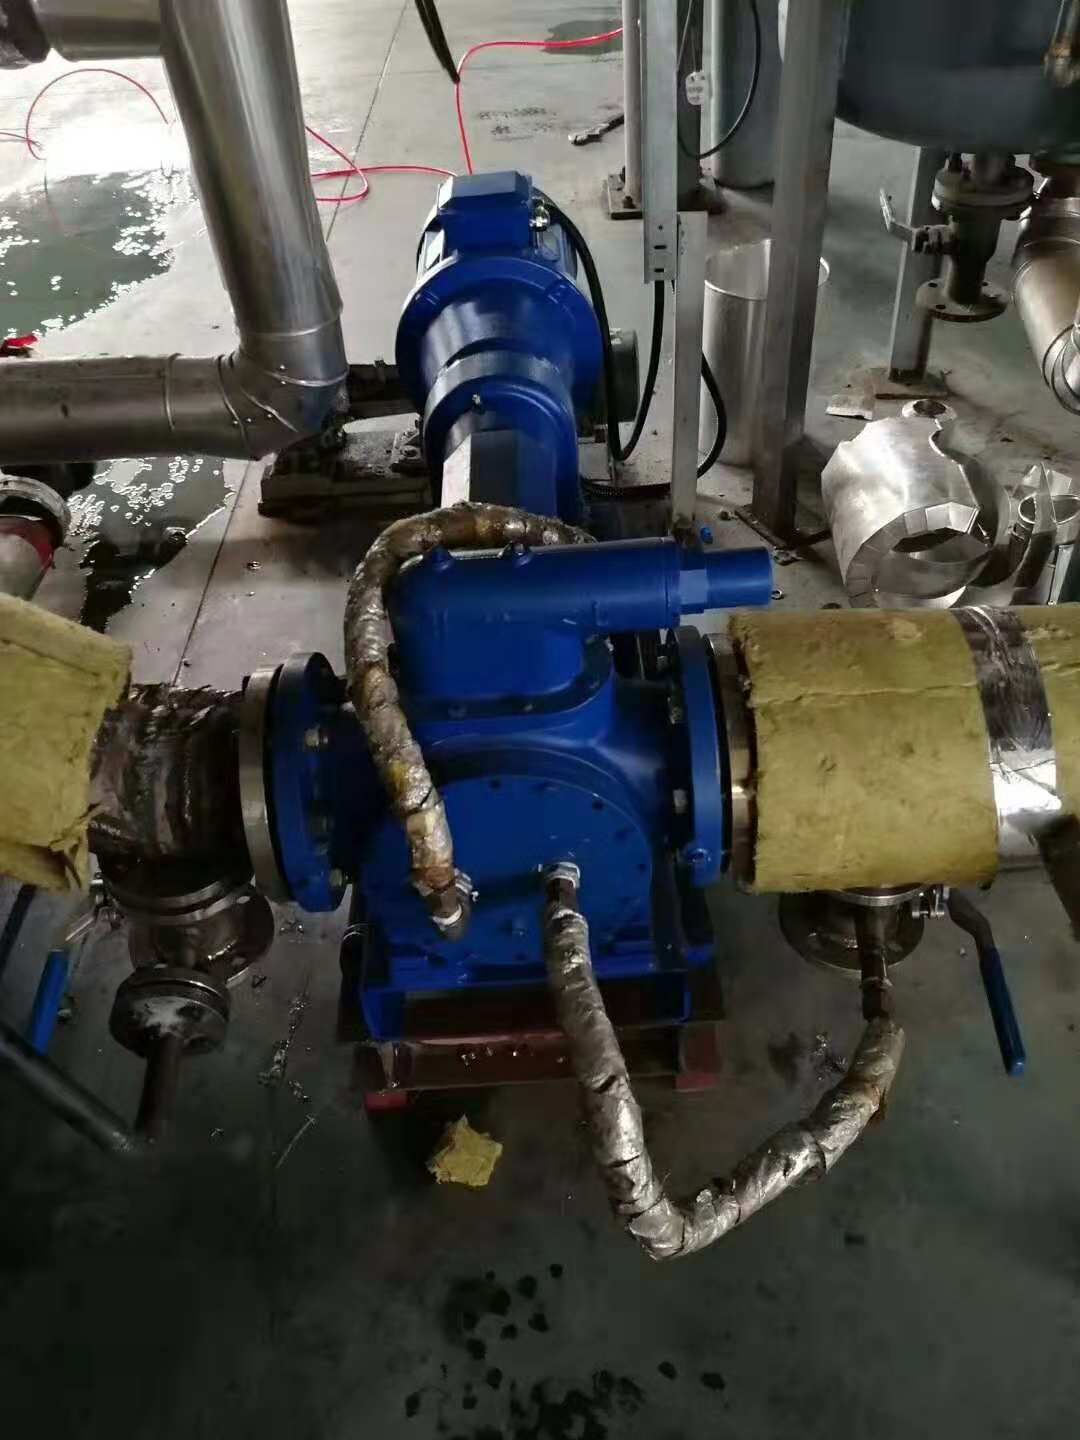 内齿轮保温热熔胶增压泵NYP225B-RT-W32调试成功